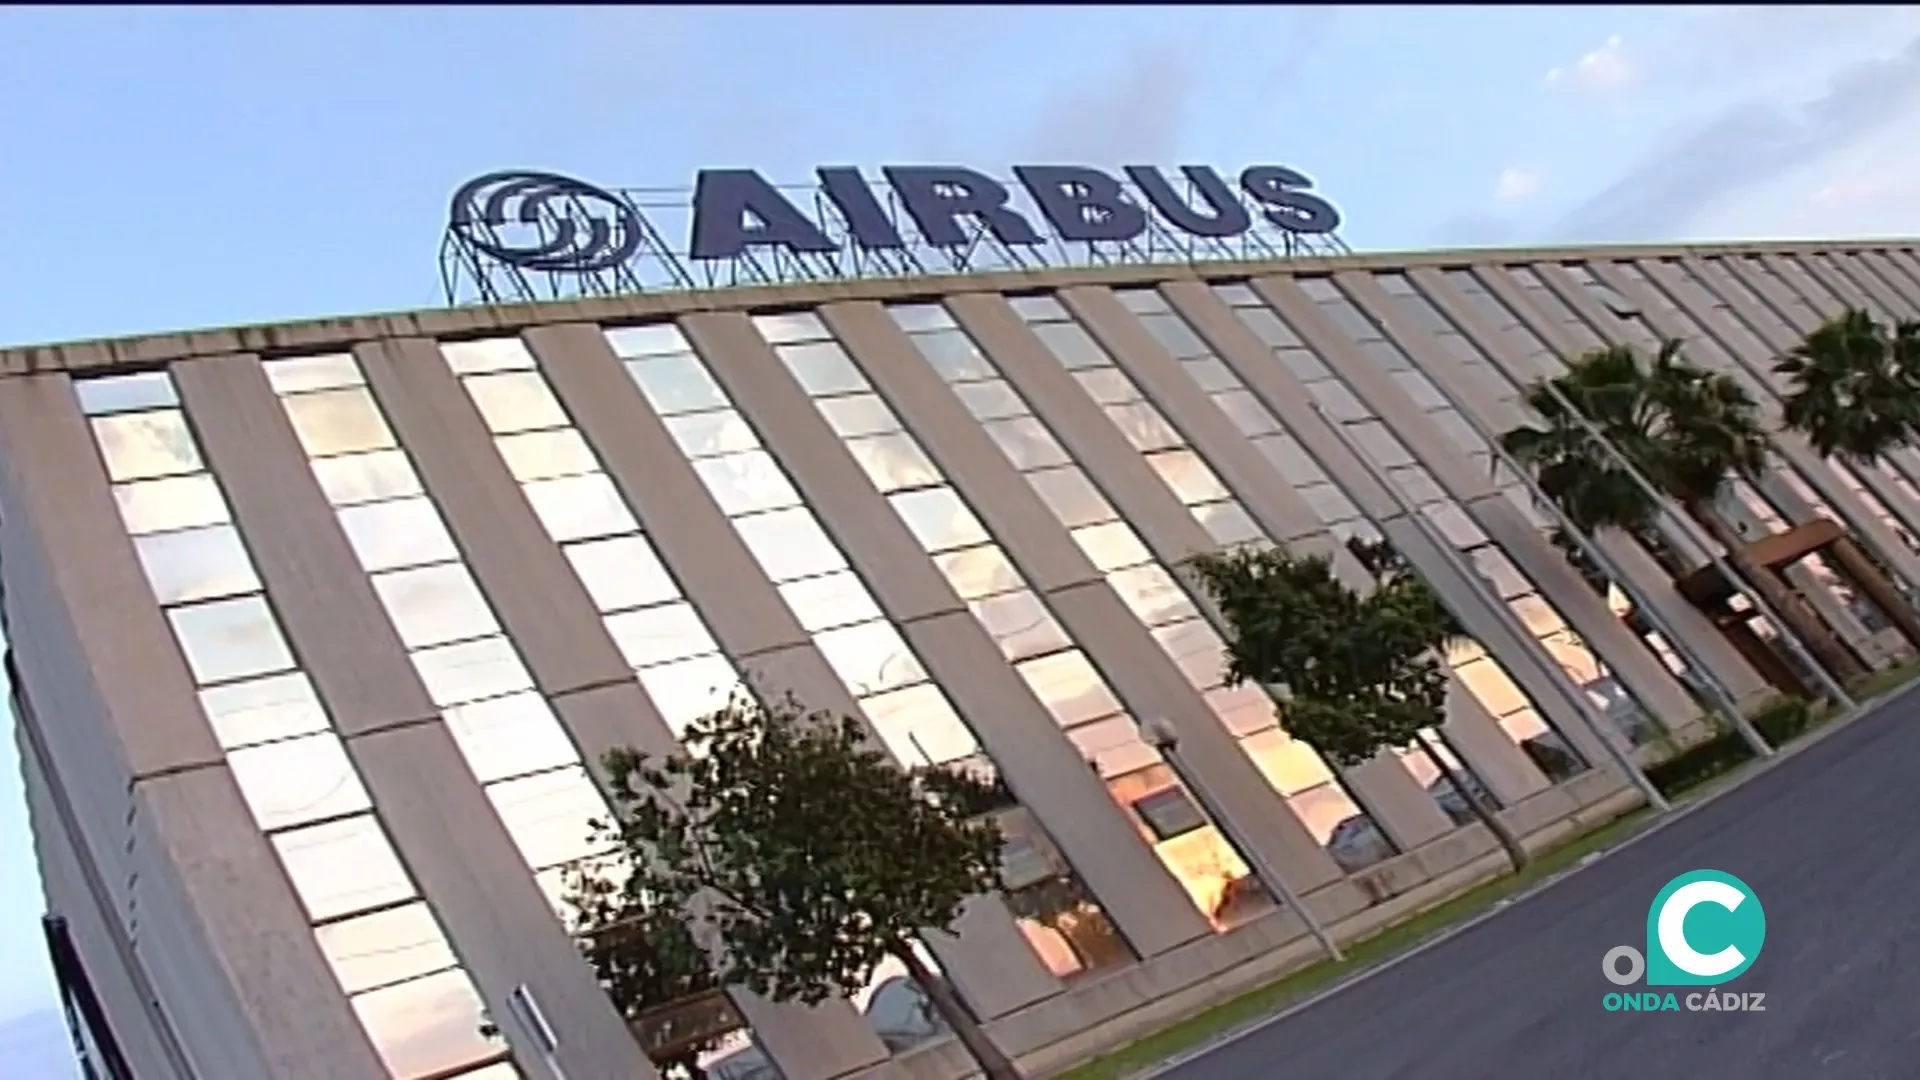 Fachada de la factoría de Airbus de Puerto Real